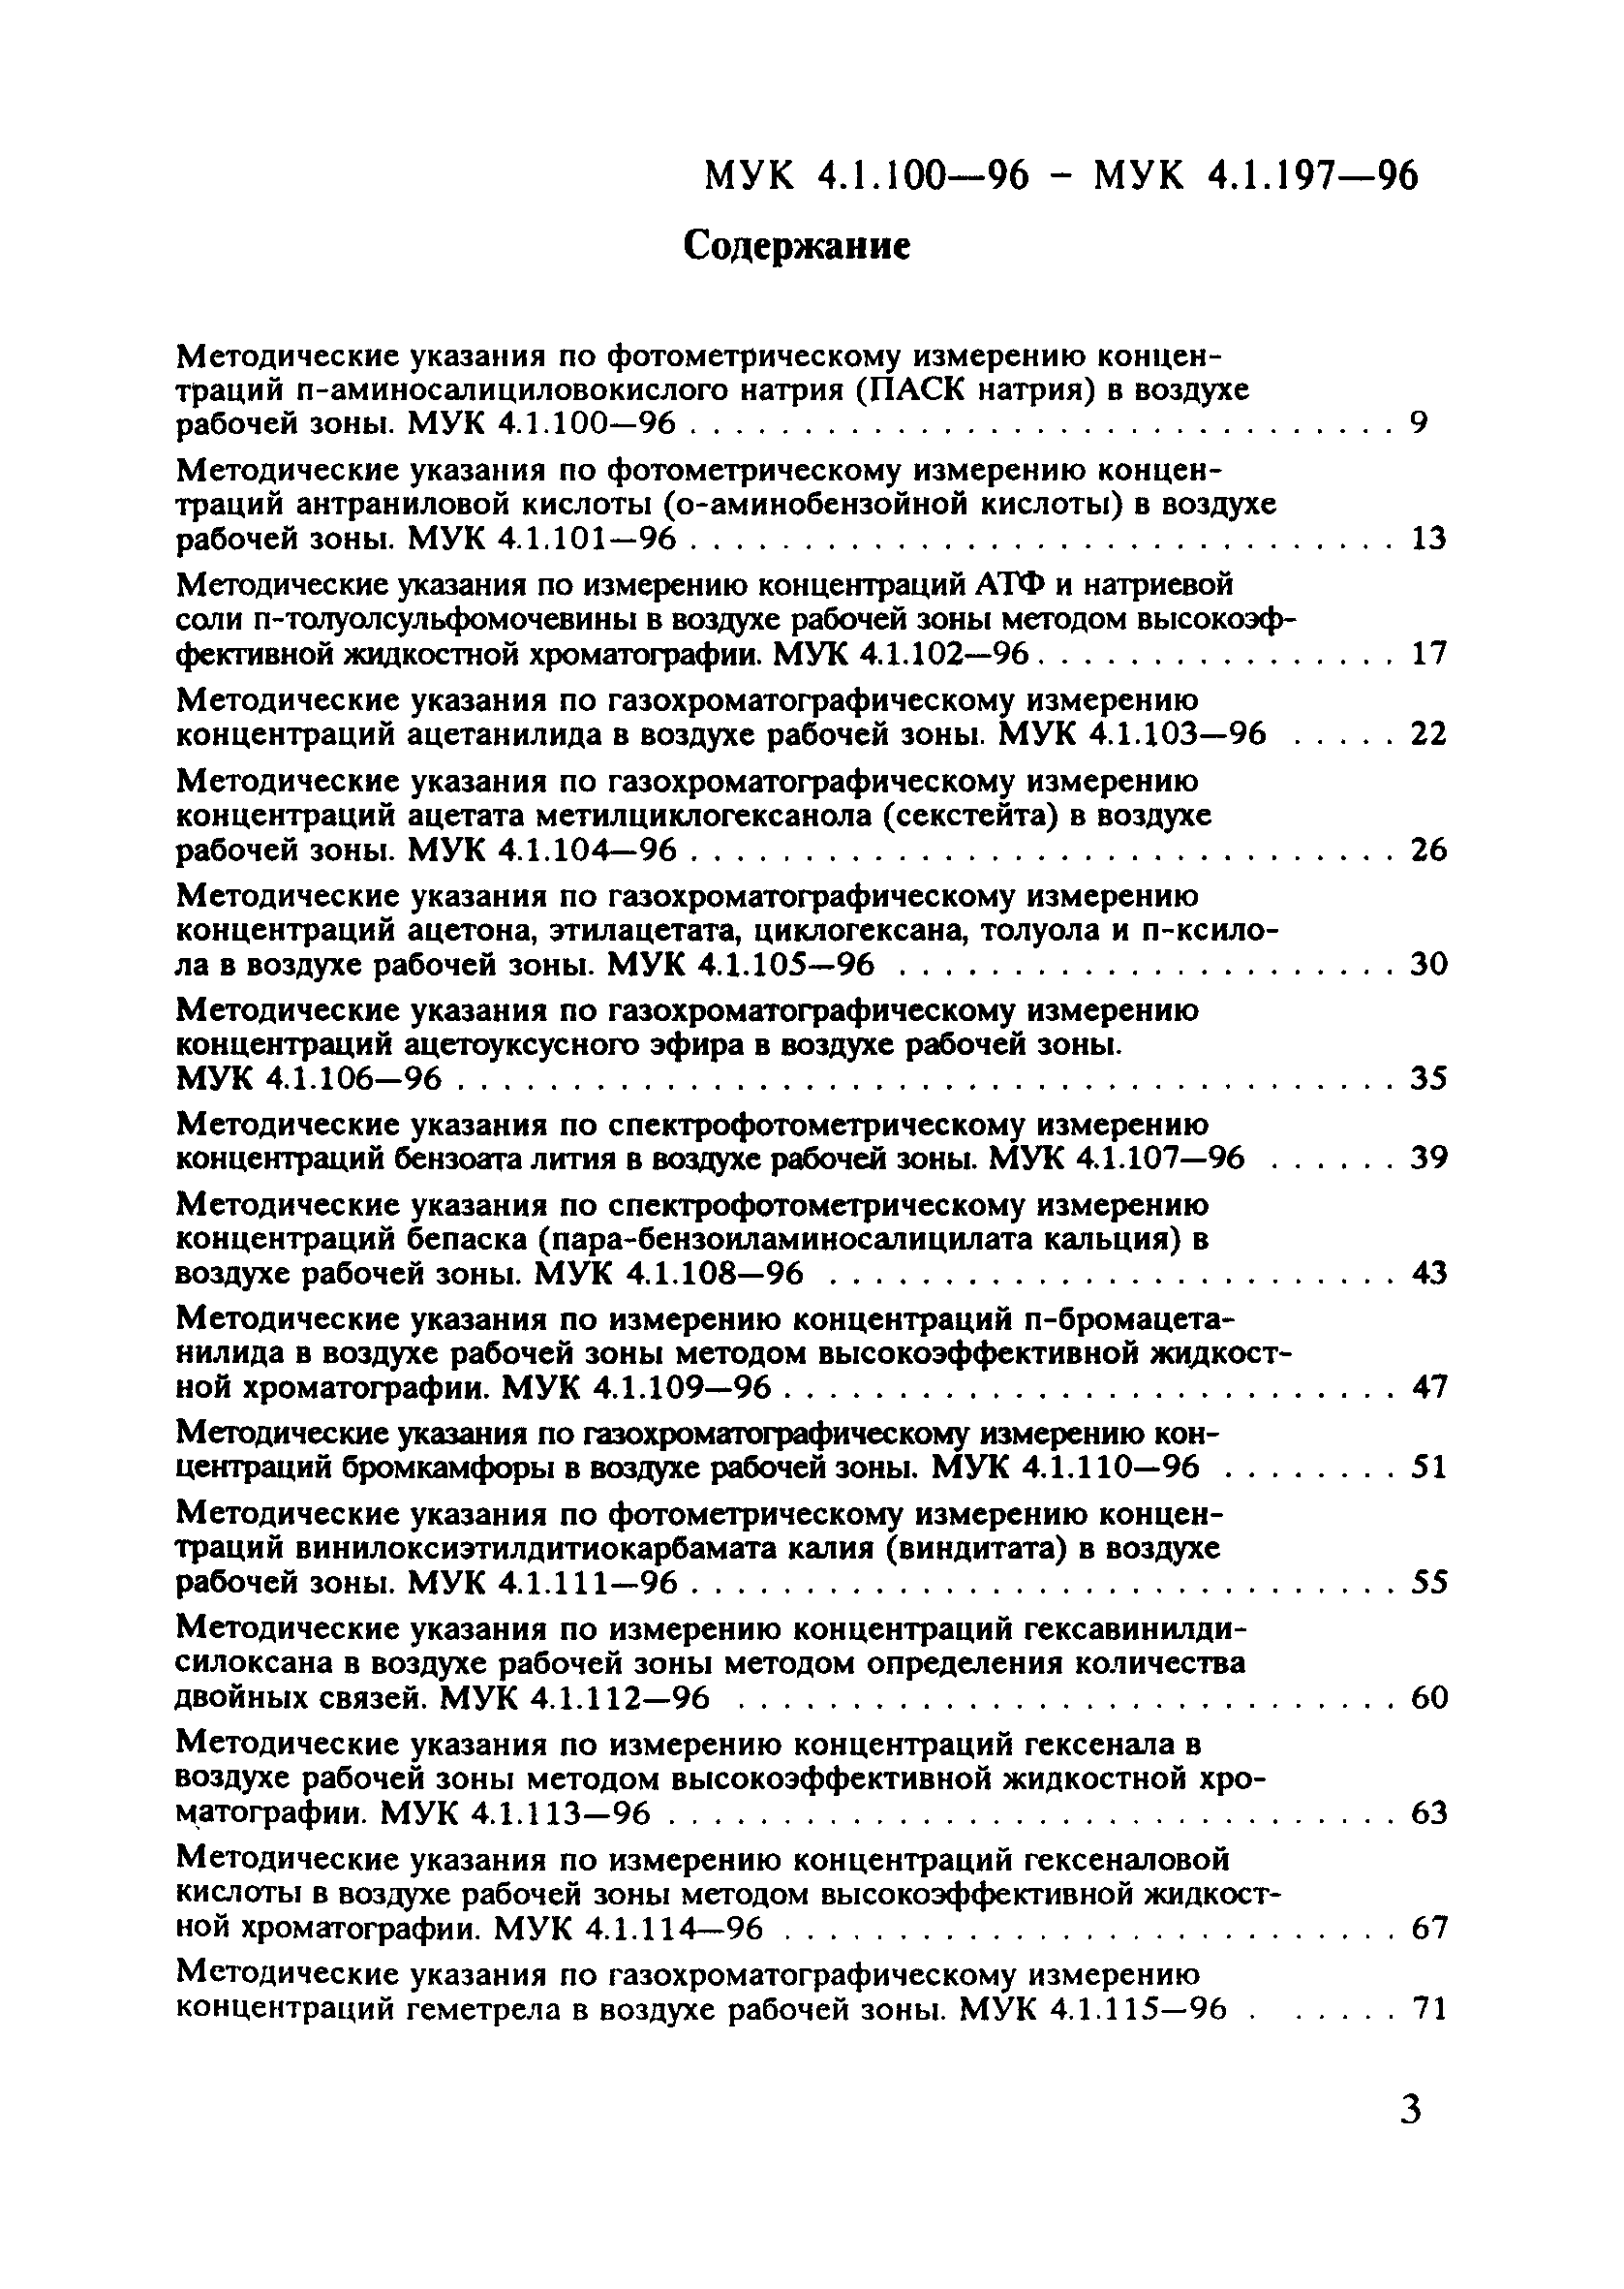 МУК 4.1.159-96